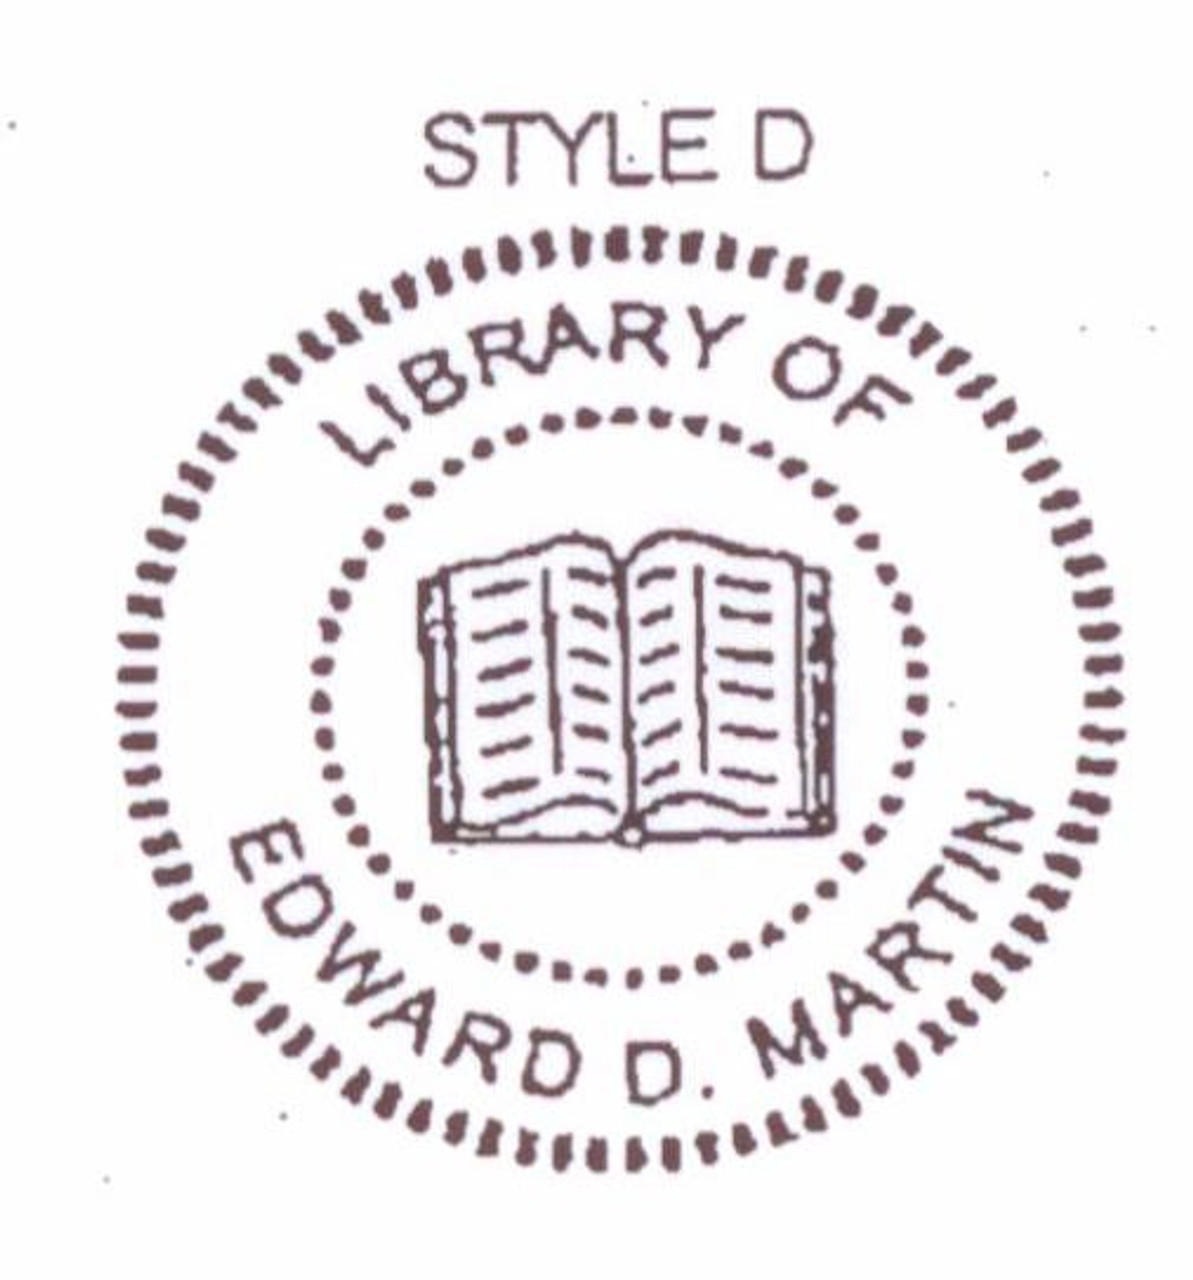 Embosser Stamp Library, Custom Embosser Stamp, Stamp Custom Library